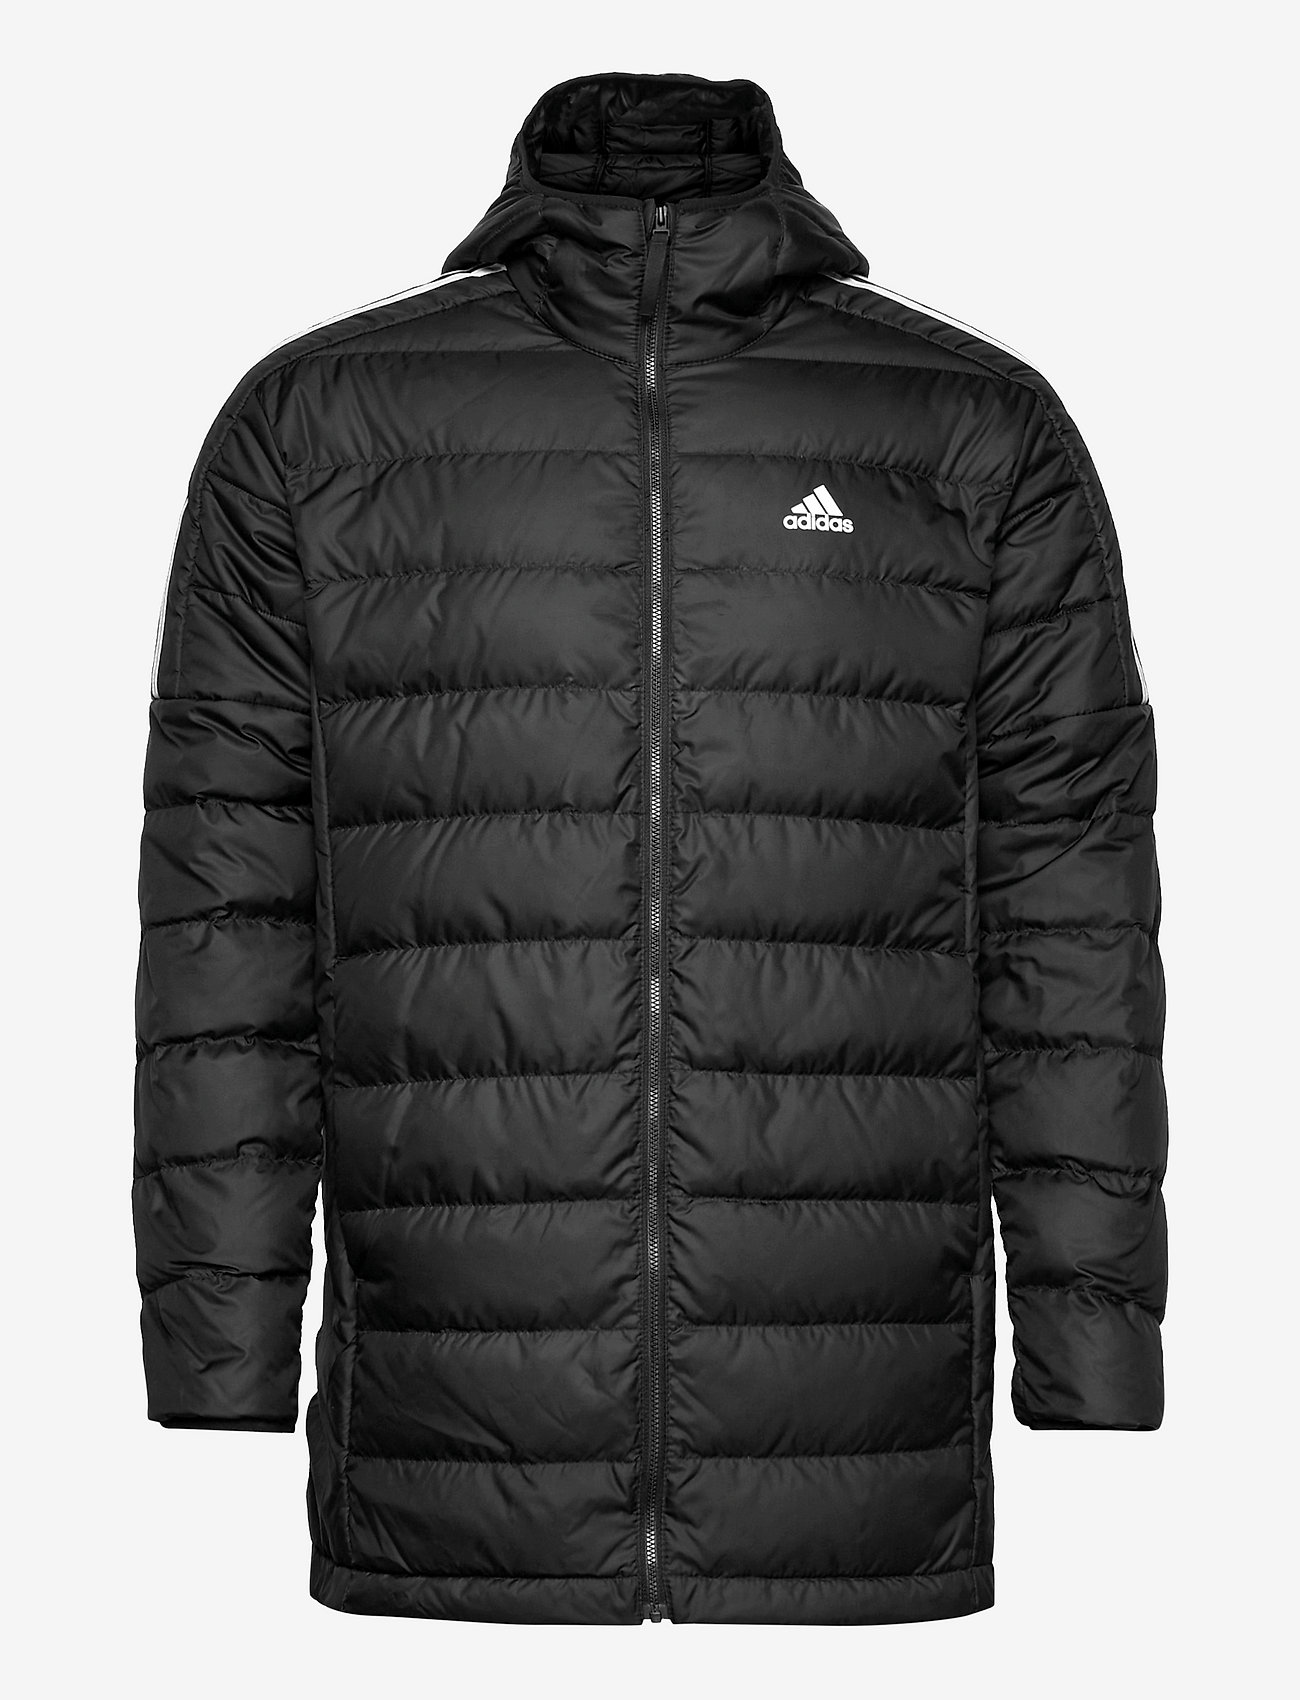 adidas Sportswear - Essentials Down Parka - dūnu jakas - black - 0